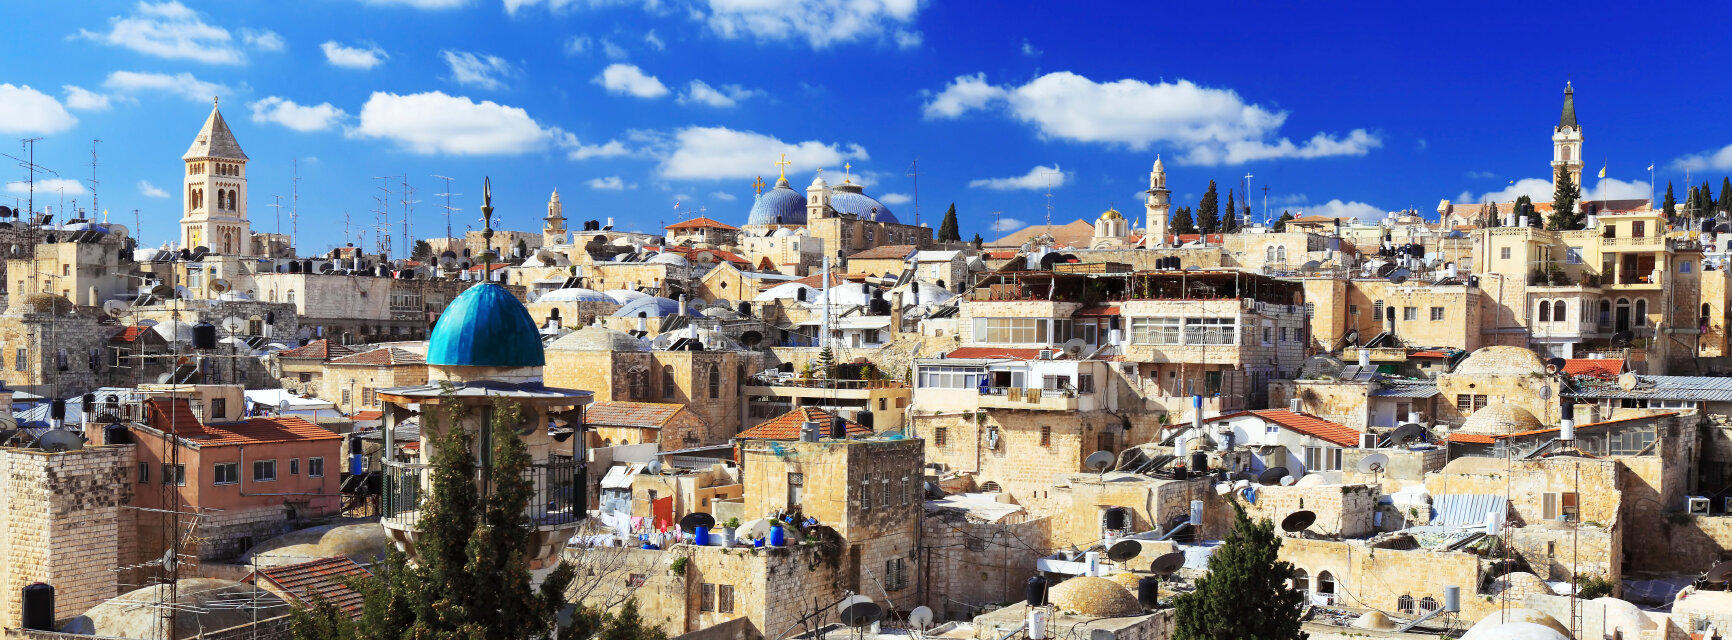 Иерусалим: отели и гостиницы в центре